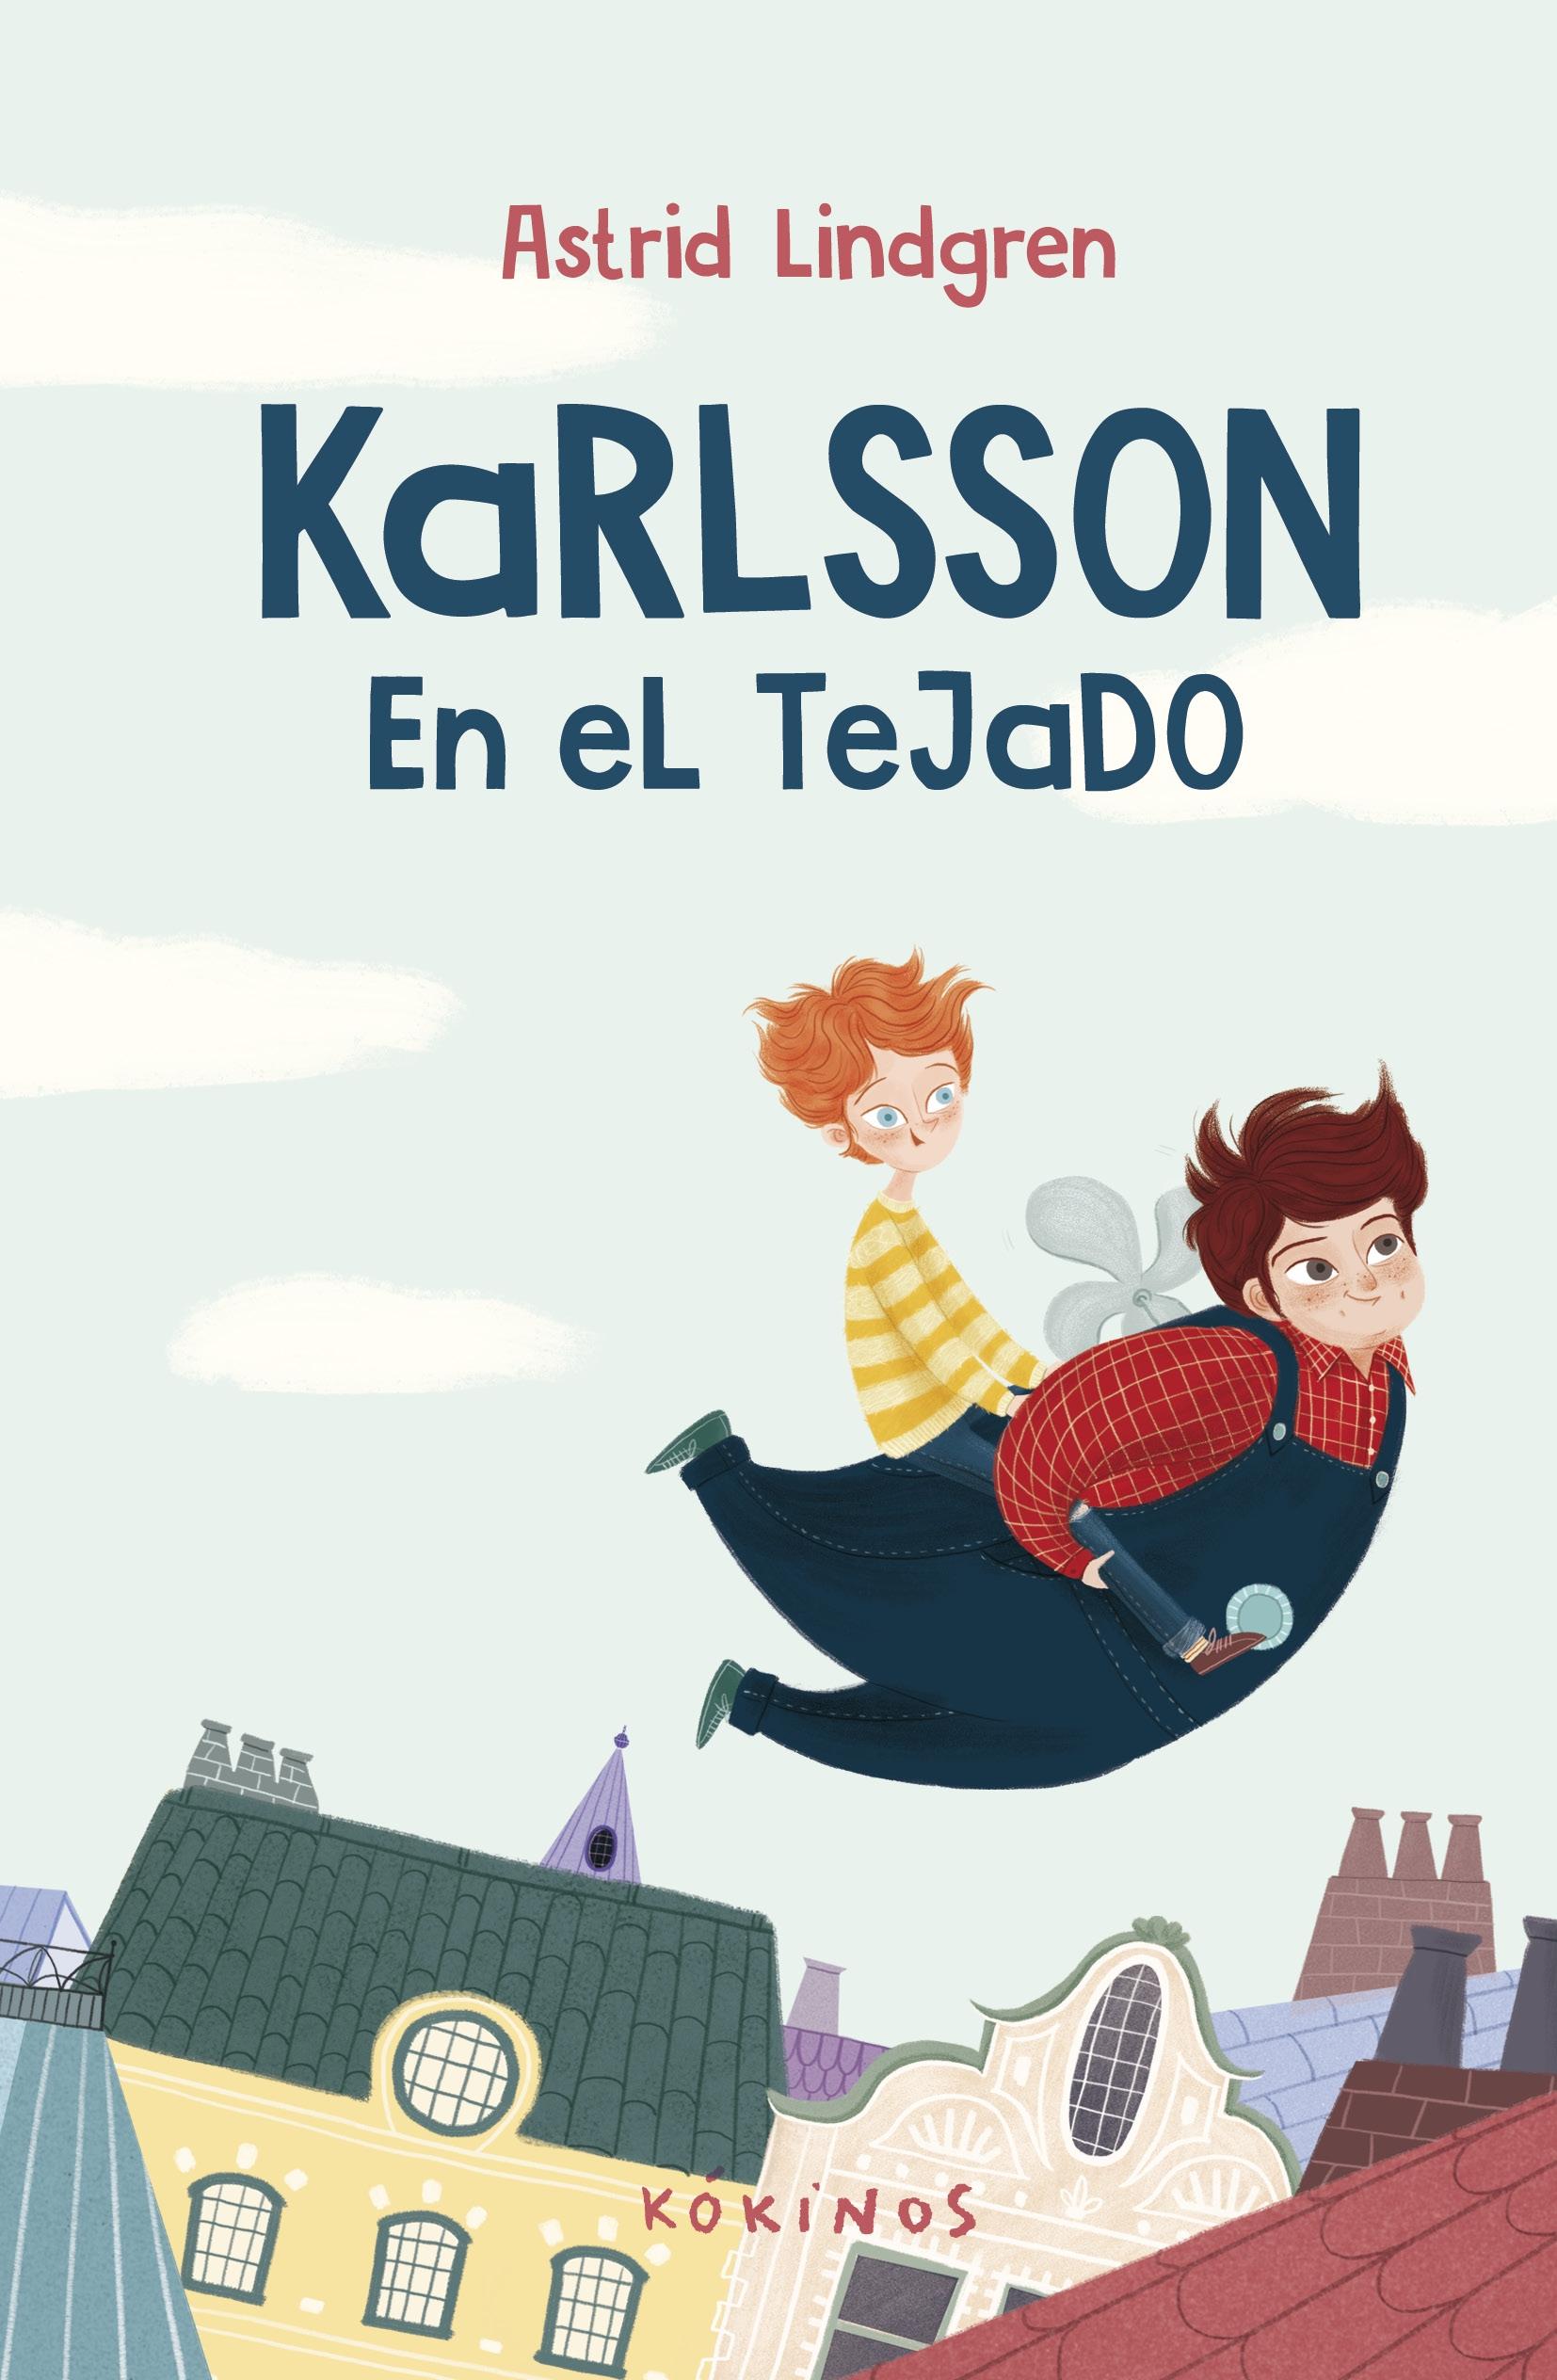 Karlsson "En el Tejado"